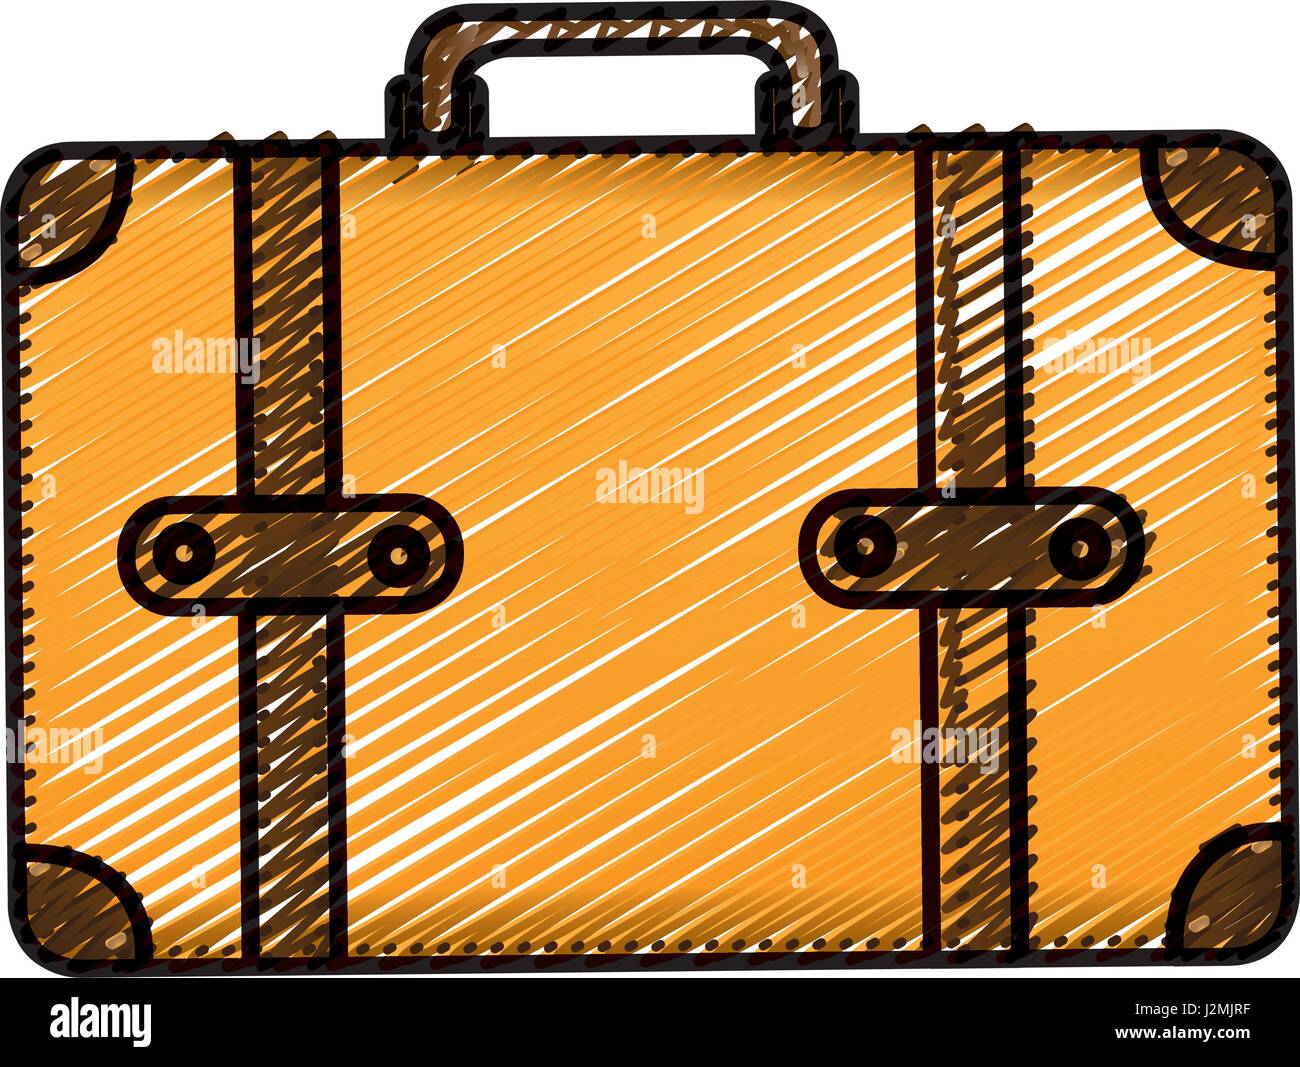 Farbe Bleistiftzeichnung Silhouette mit Leder Koffer Stock-Vektorgrafik -  Alamy